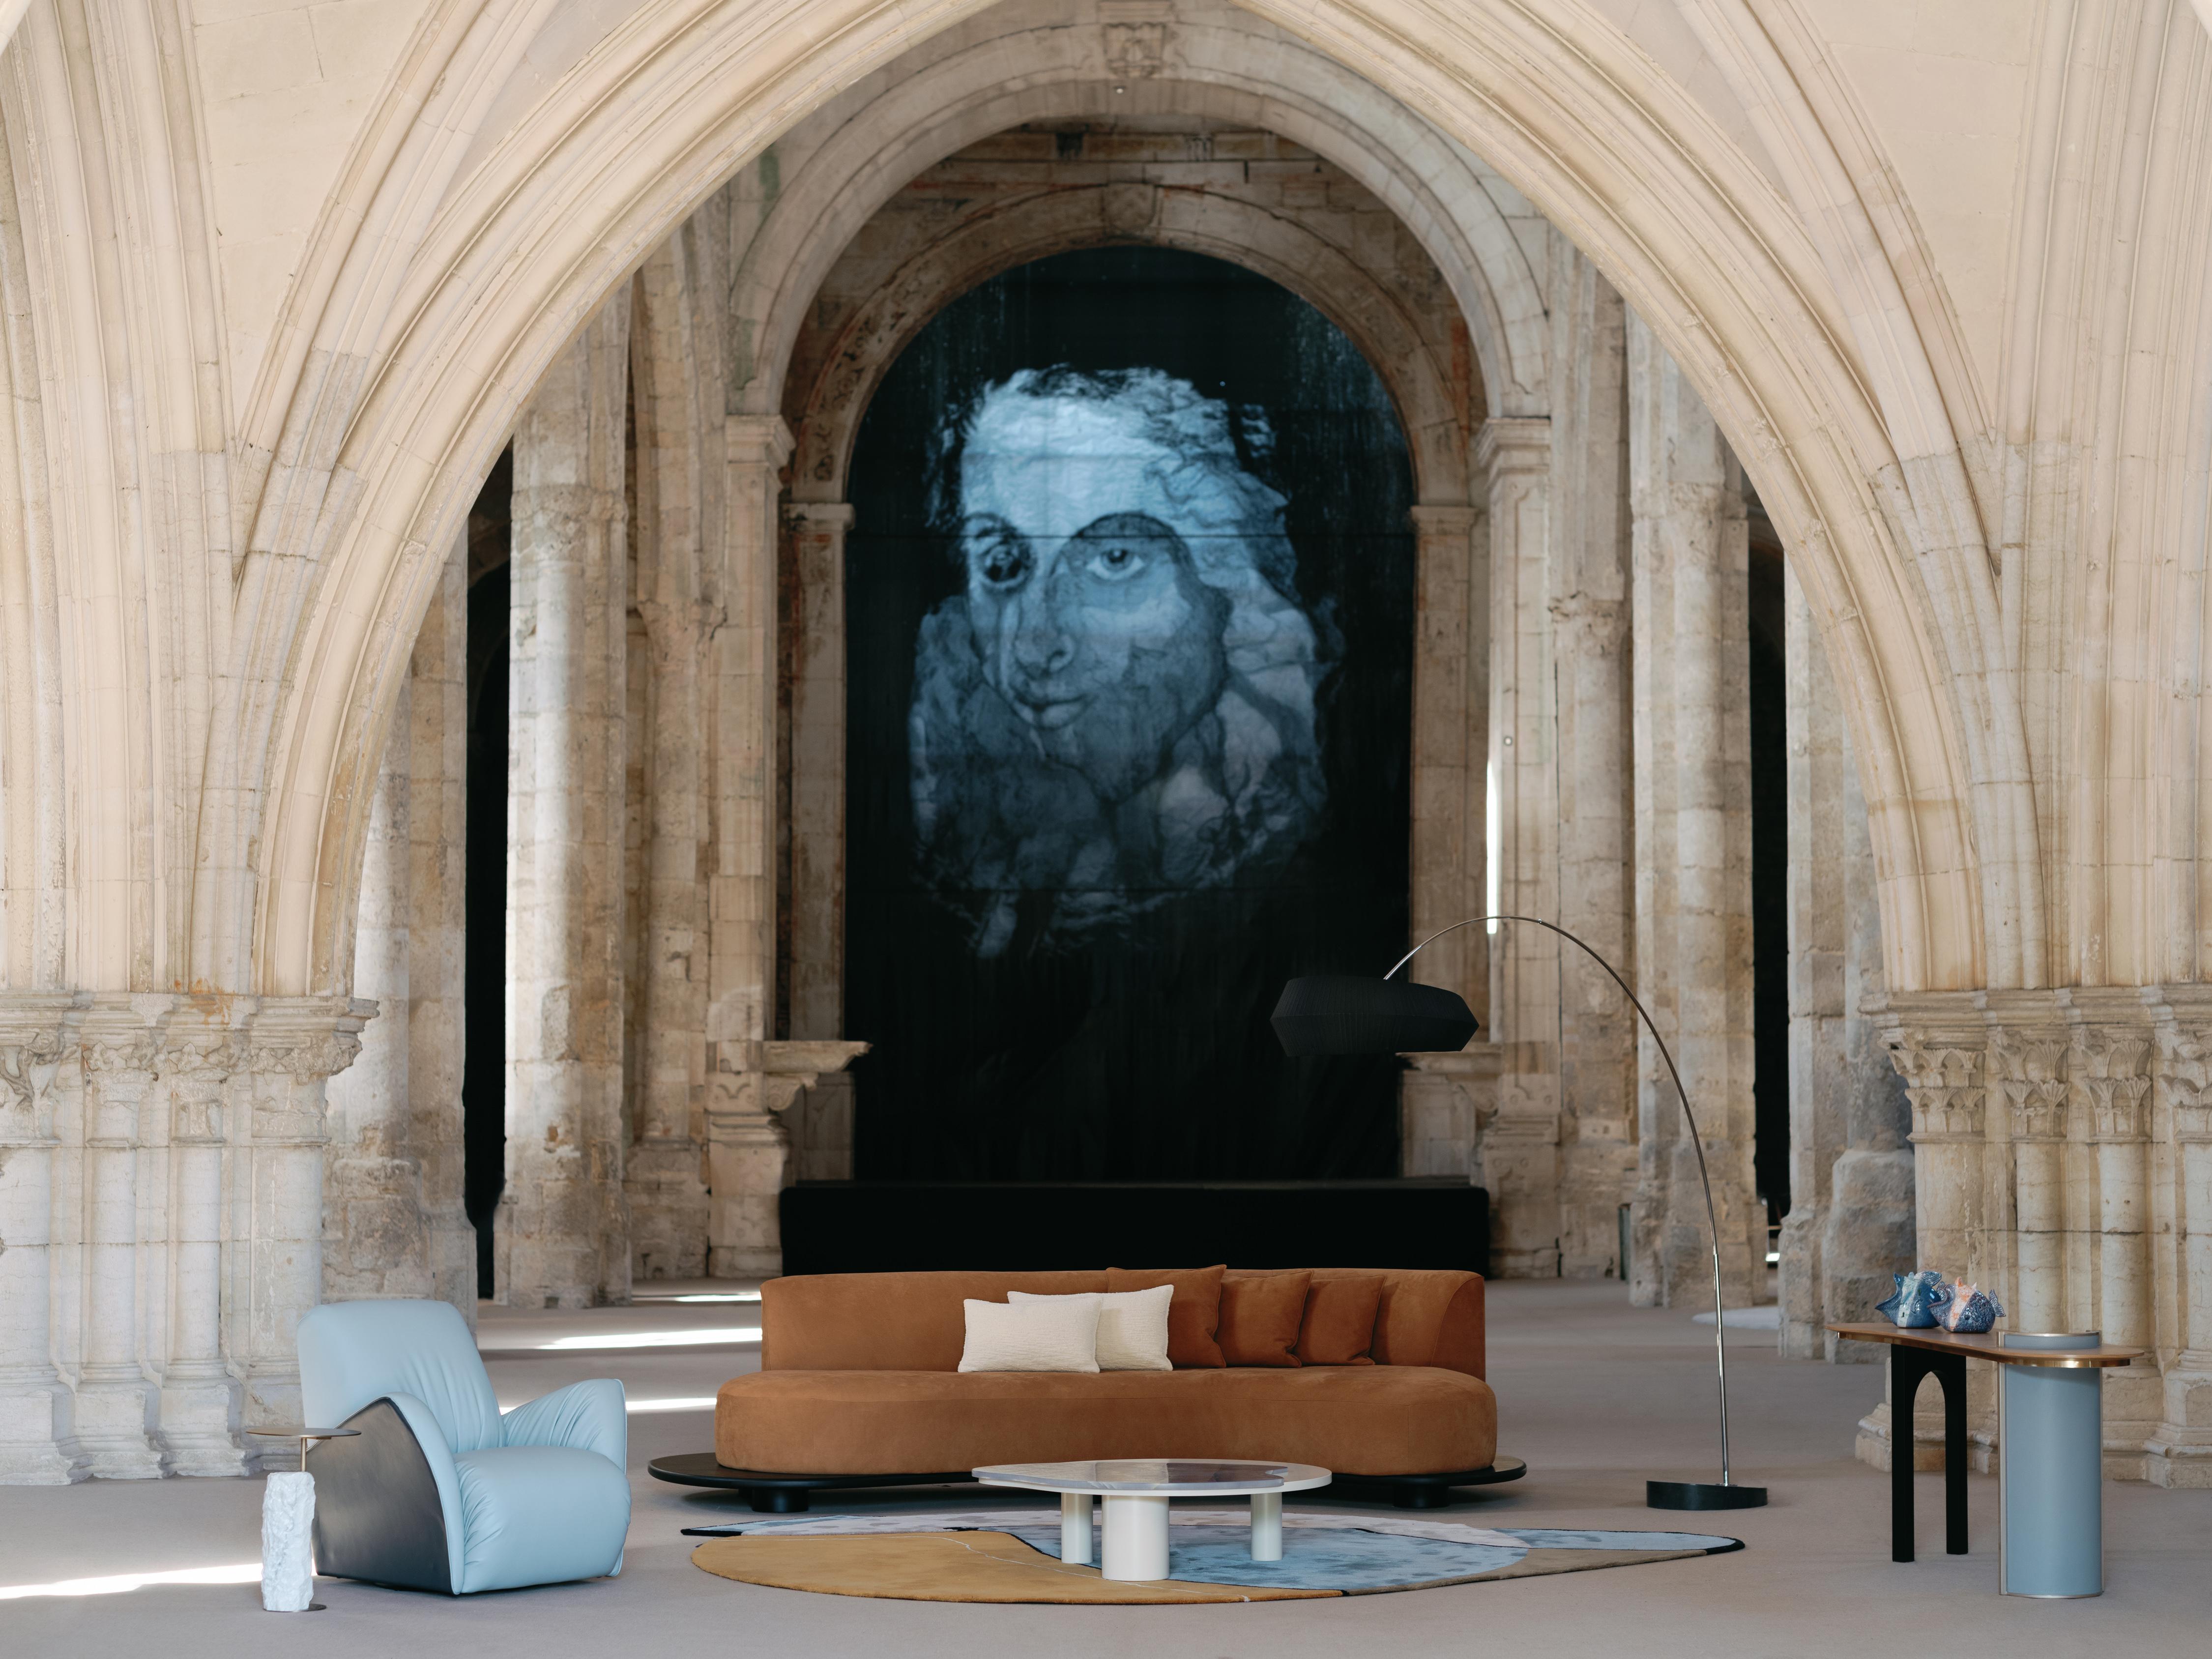 Galapinhos Sofa, Contemporary Collection, handgefertigt in Portugal - Europa von Greenapple.

Das moderne Galapinhos-Sofa wurde entworfen, um die Essenz der Natur in den Innenraum zu bringen, indem es sich von der fesselnden Naturlandschaft des